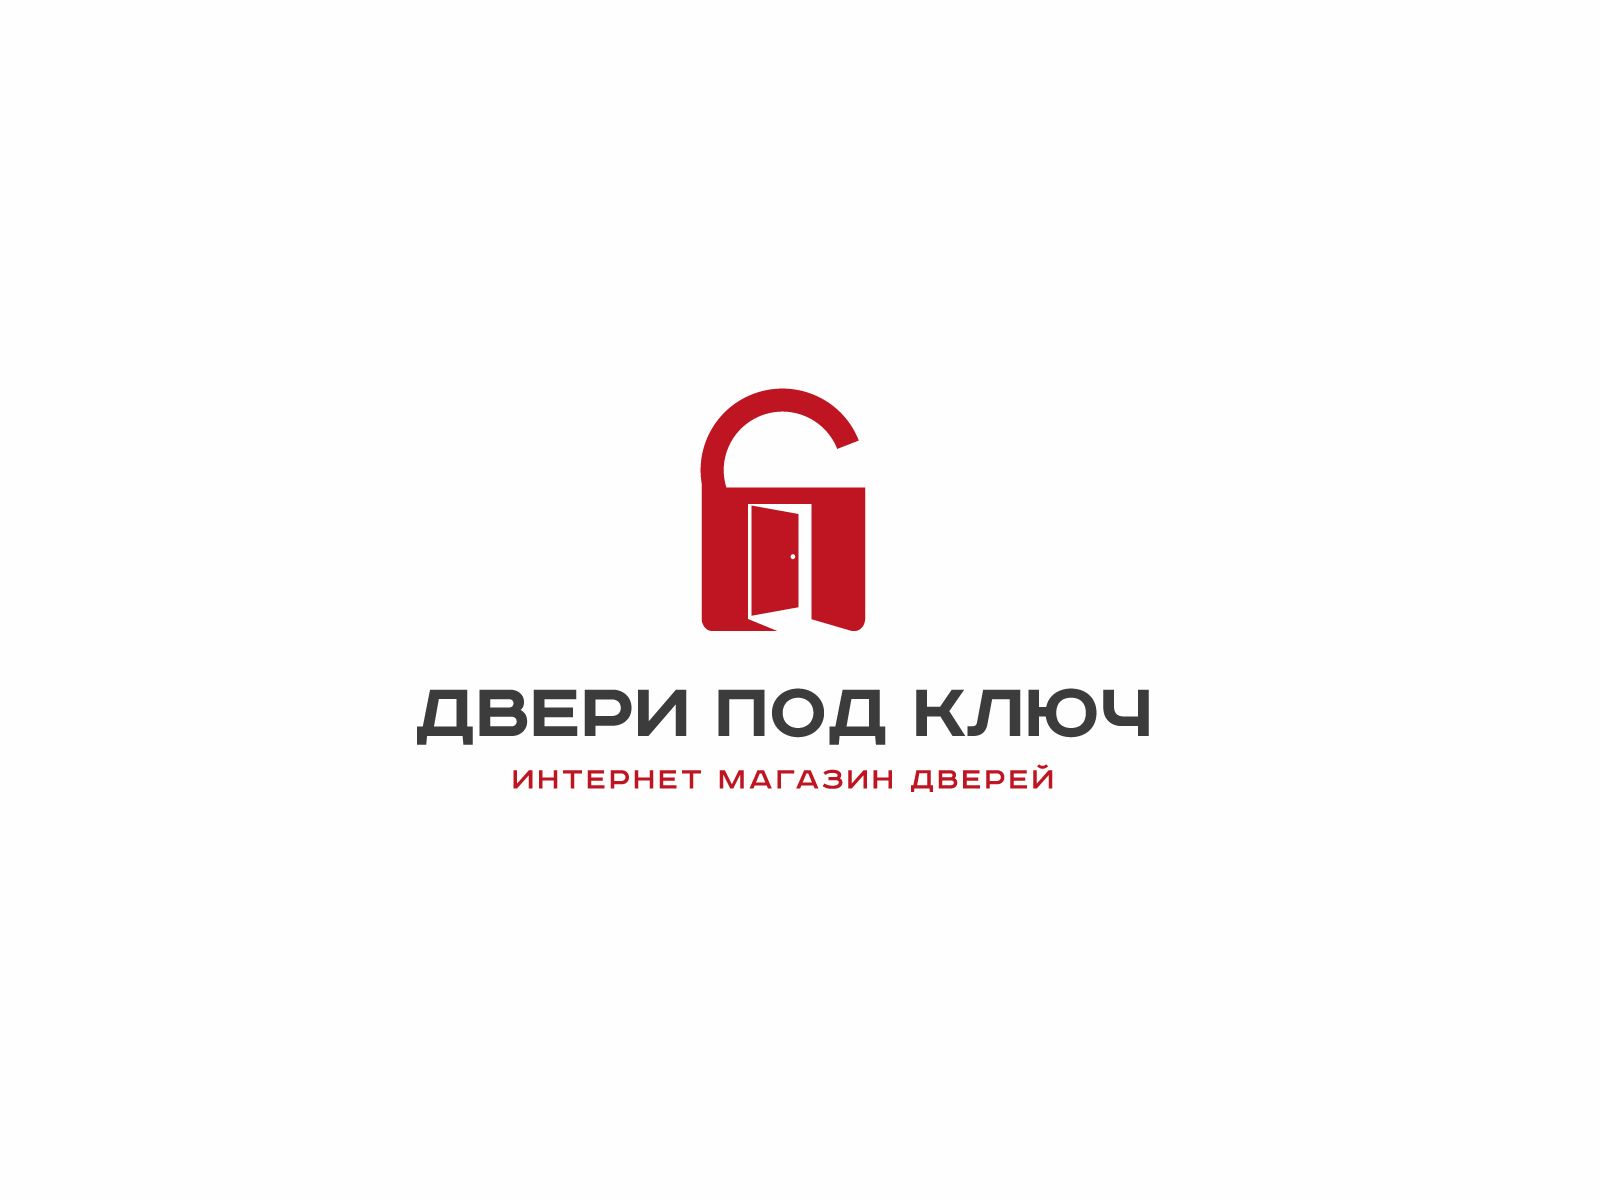 Фирменный стиль и логотип для магазина дверей - дизайнер U4po4mak